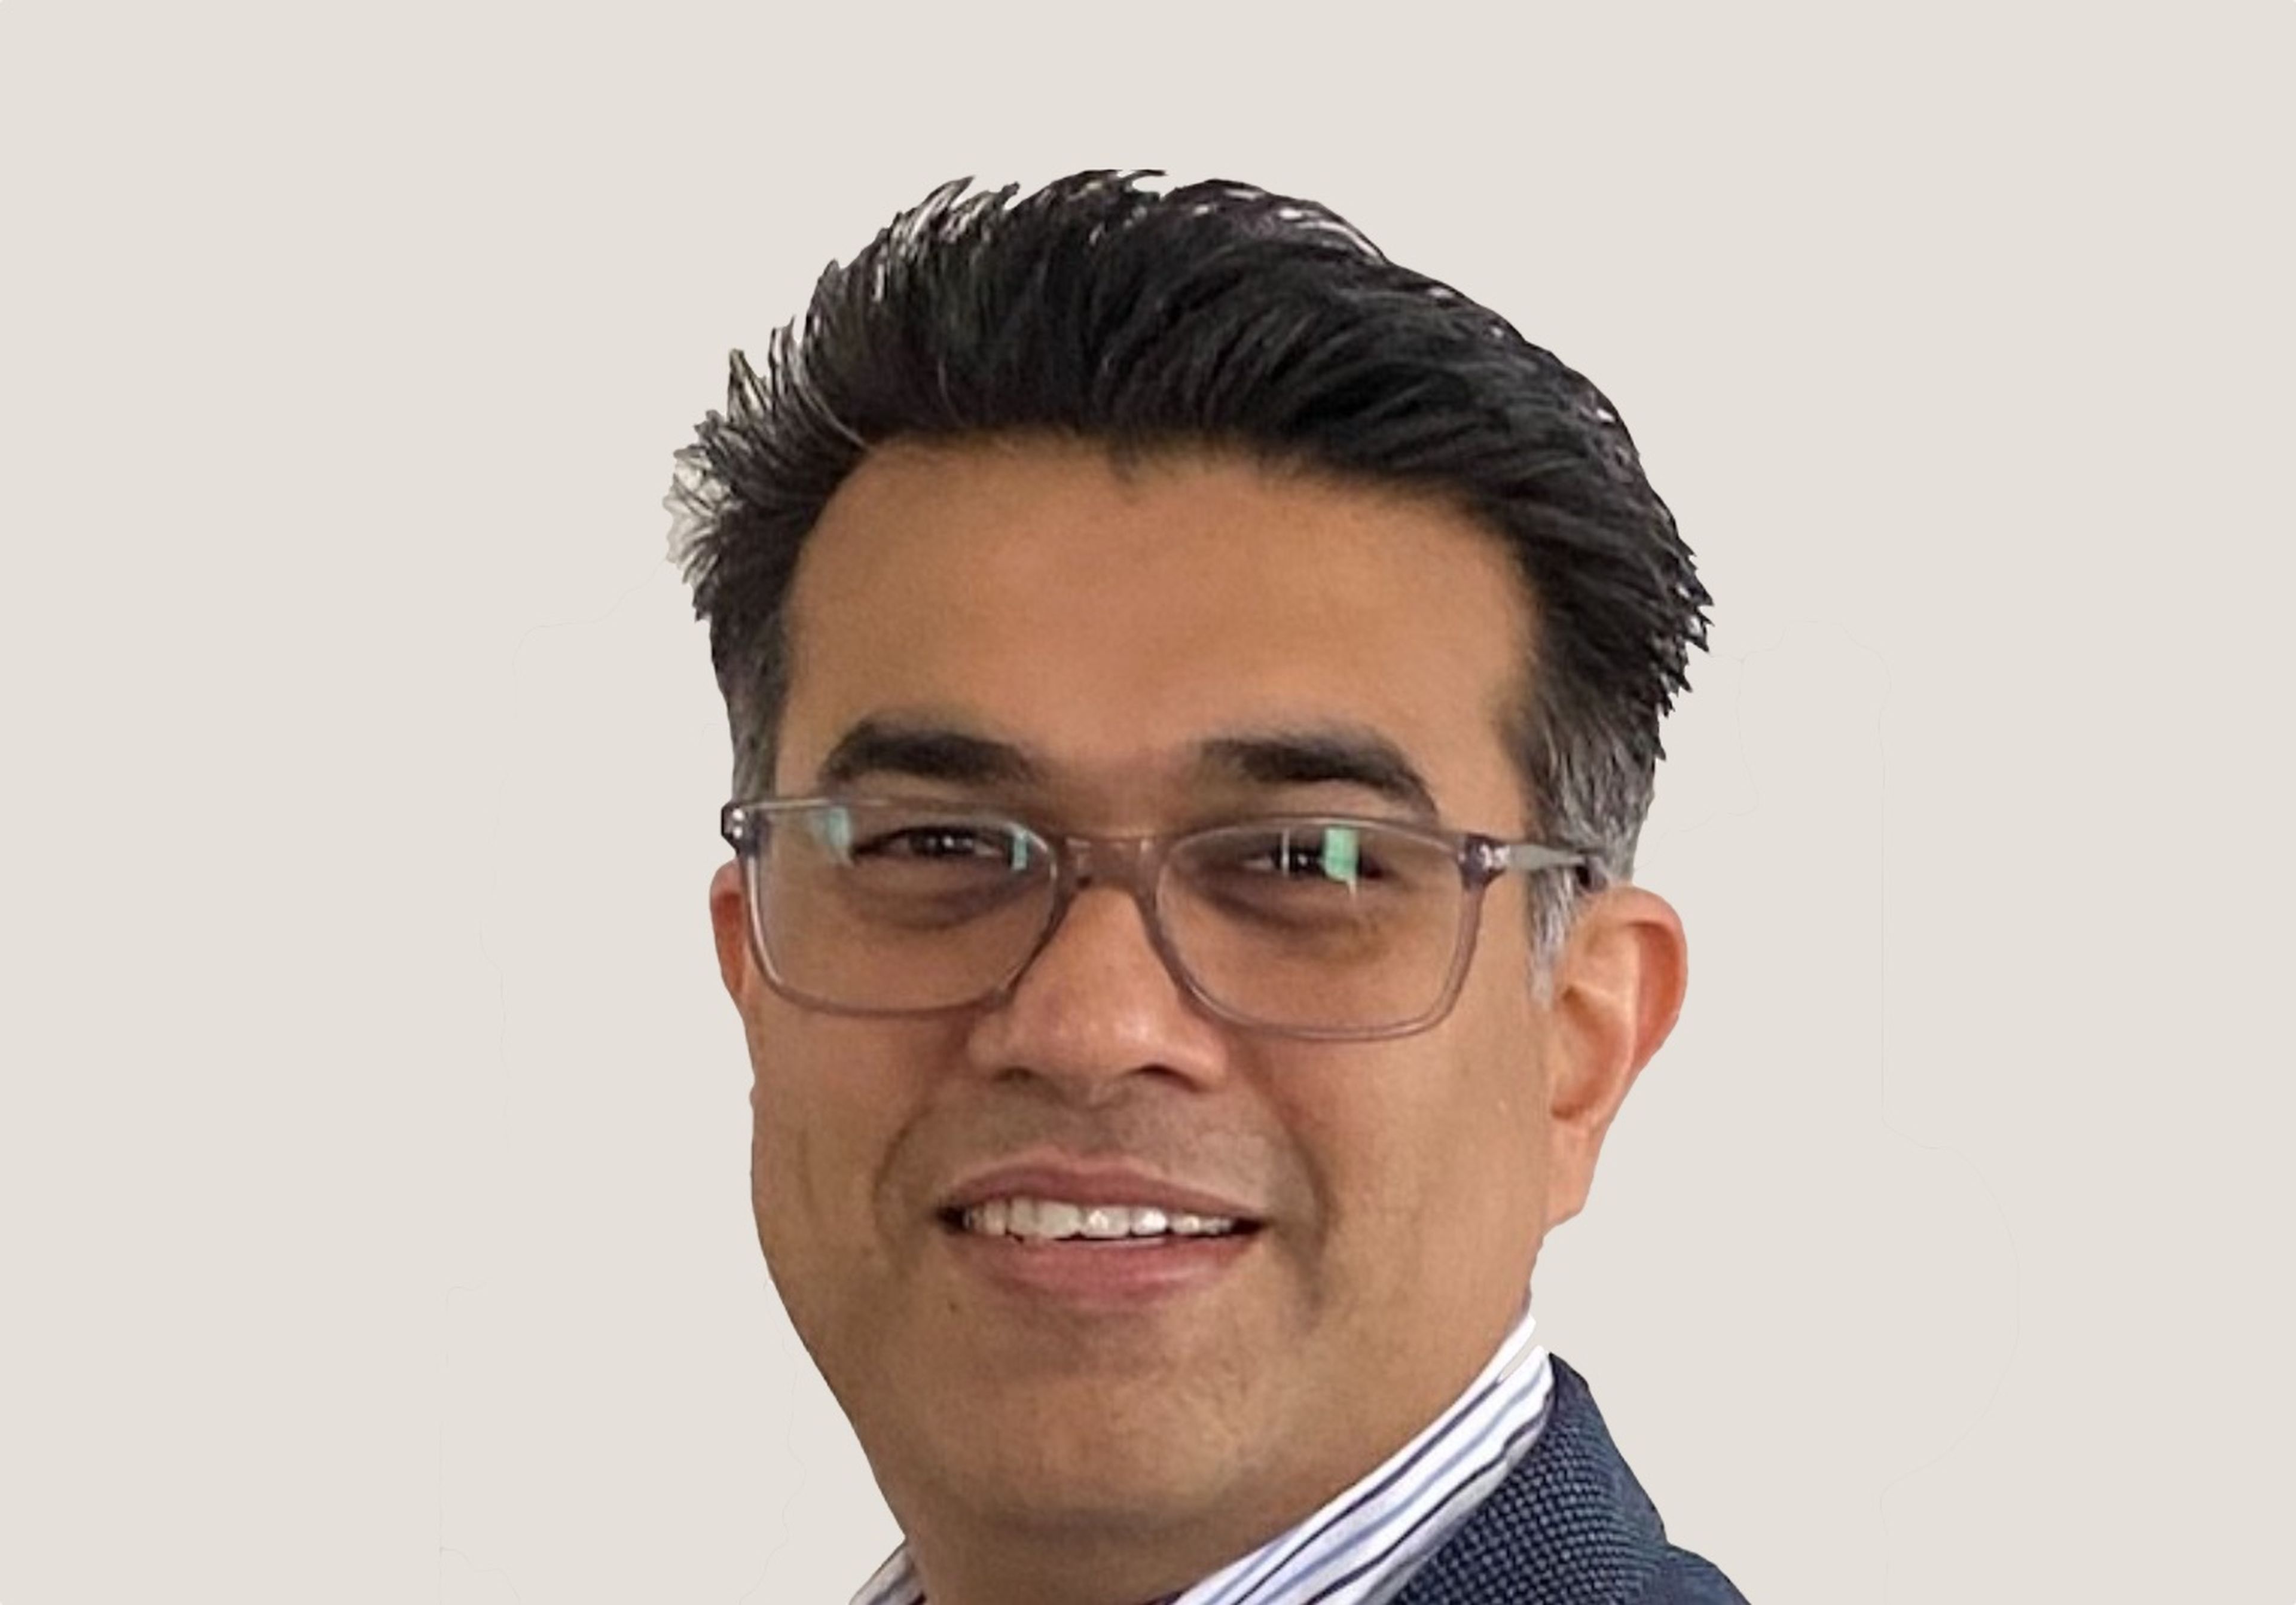 Rahul Kumar, vicepresidente y senior partner de Industria Telco Global en IBM.